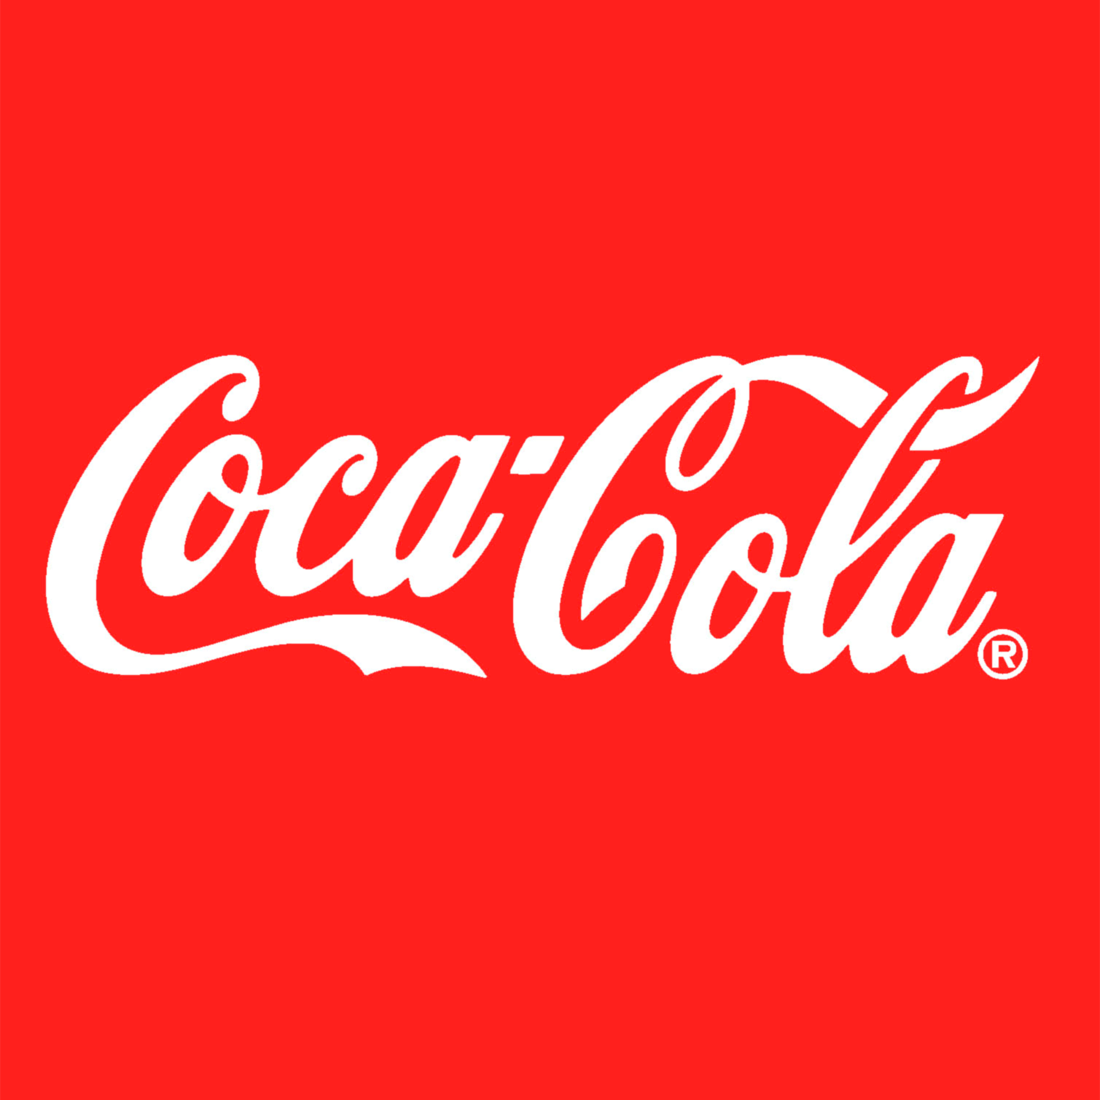 Il logo Coca-Cola